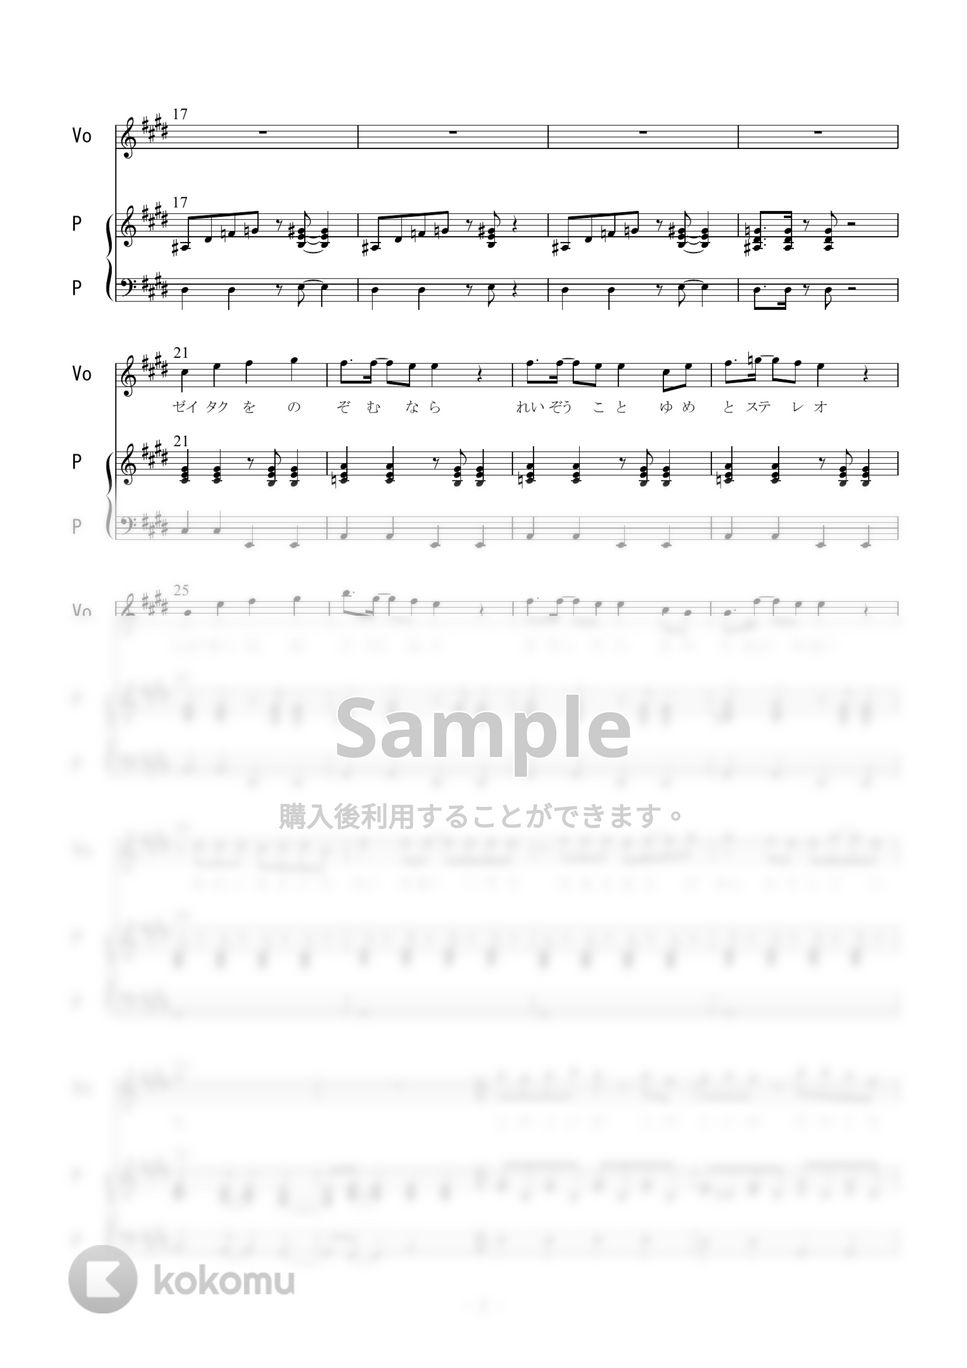 マカロニえんぴつ - 洗濯機と君とラヂオ (ピアノ弾き語り) by 二次元楽譜製作所